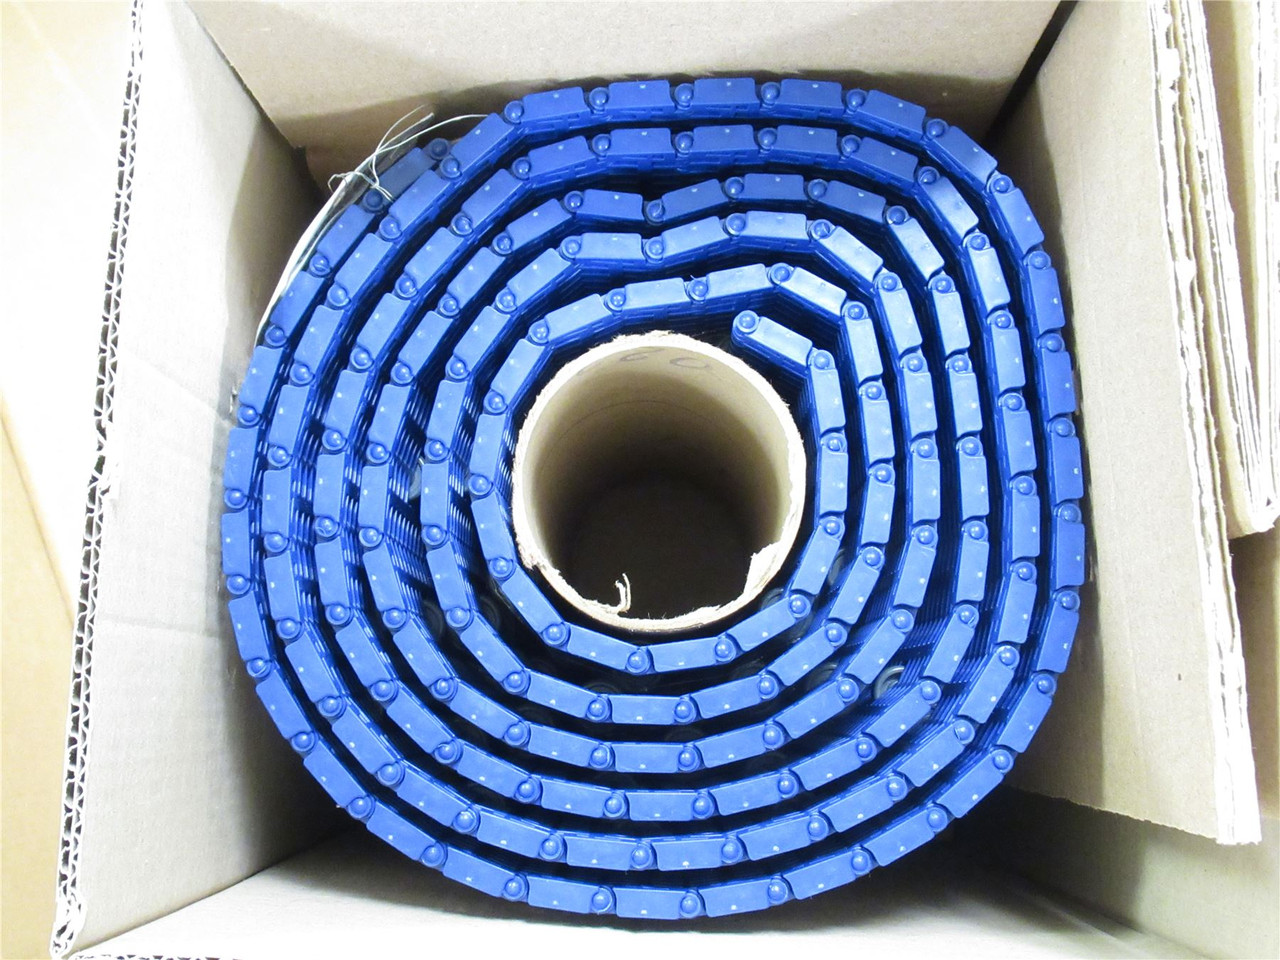 Intralox 53915141; Flush Grid Acetal Blue Belt; 13.9"Wx28ft